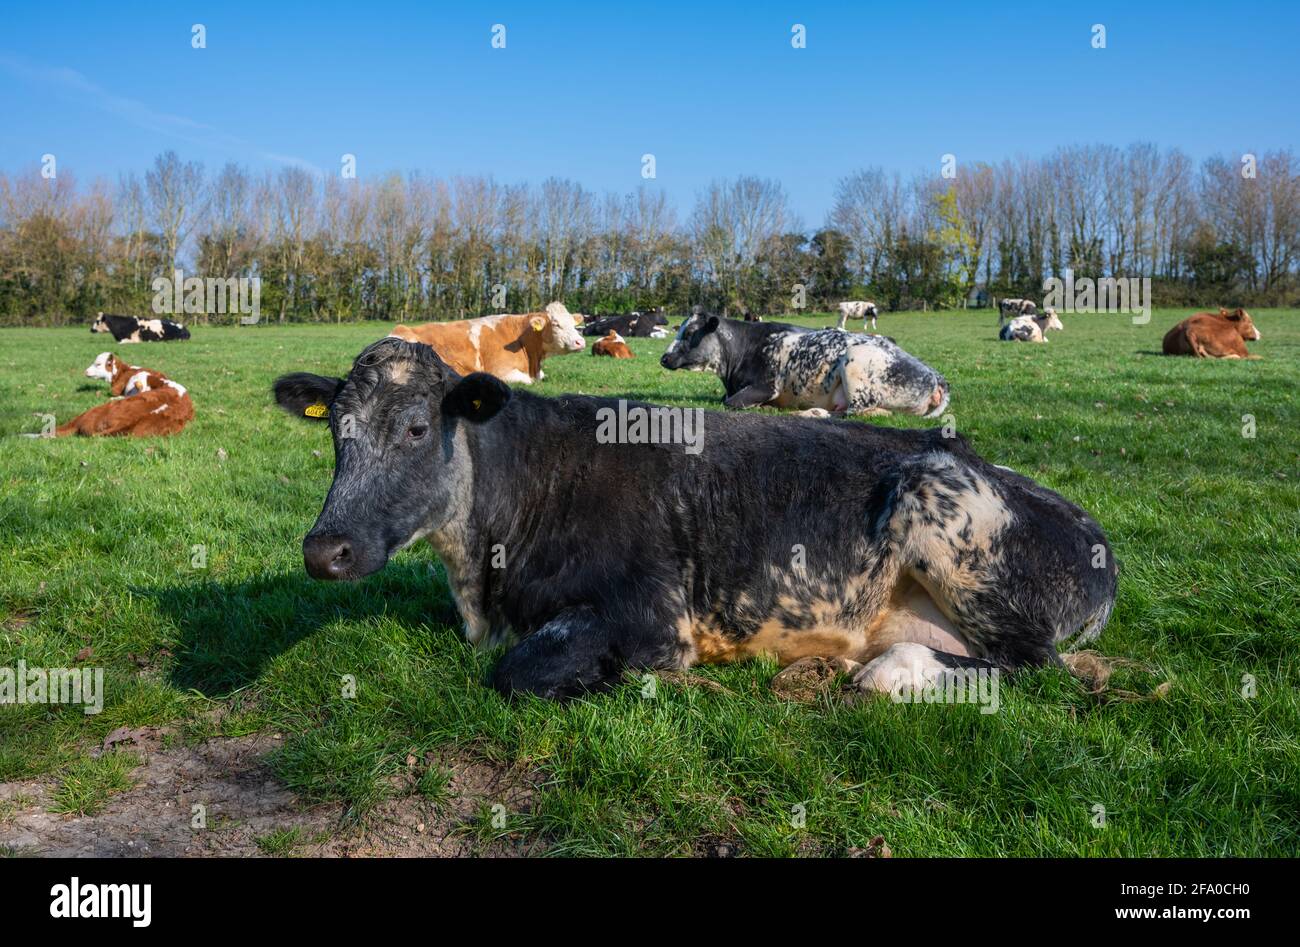 Grande vache qui pond et se détend sur l'herbe dans un champ avec d'autres bovins (vaches) le matin du printemps à West Sussex, Angleterre, Royaume-Uni. Banque D'Images